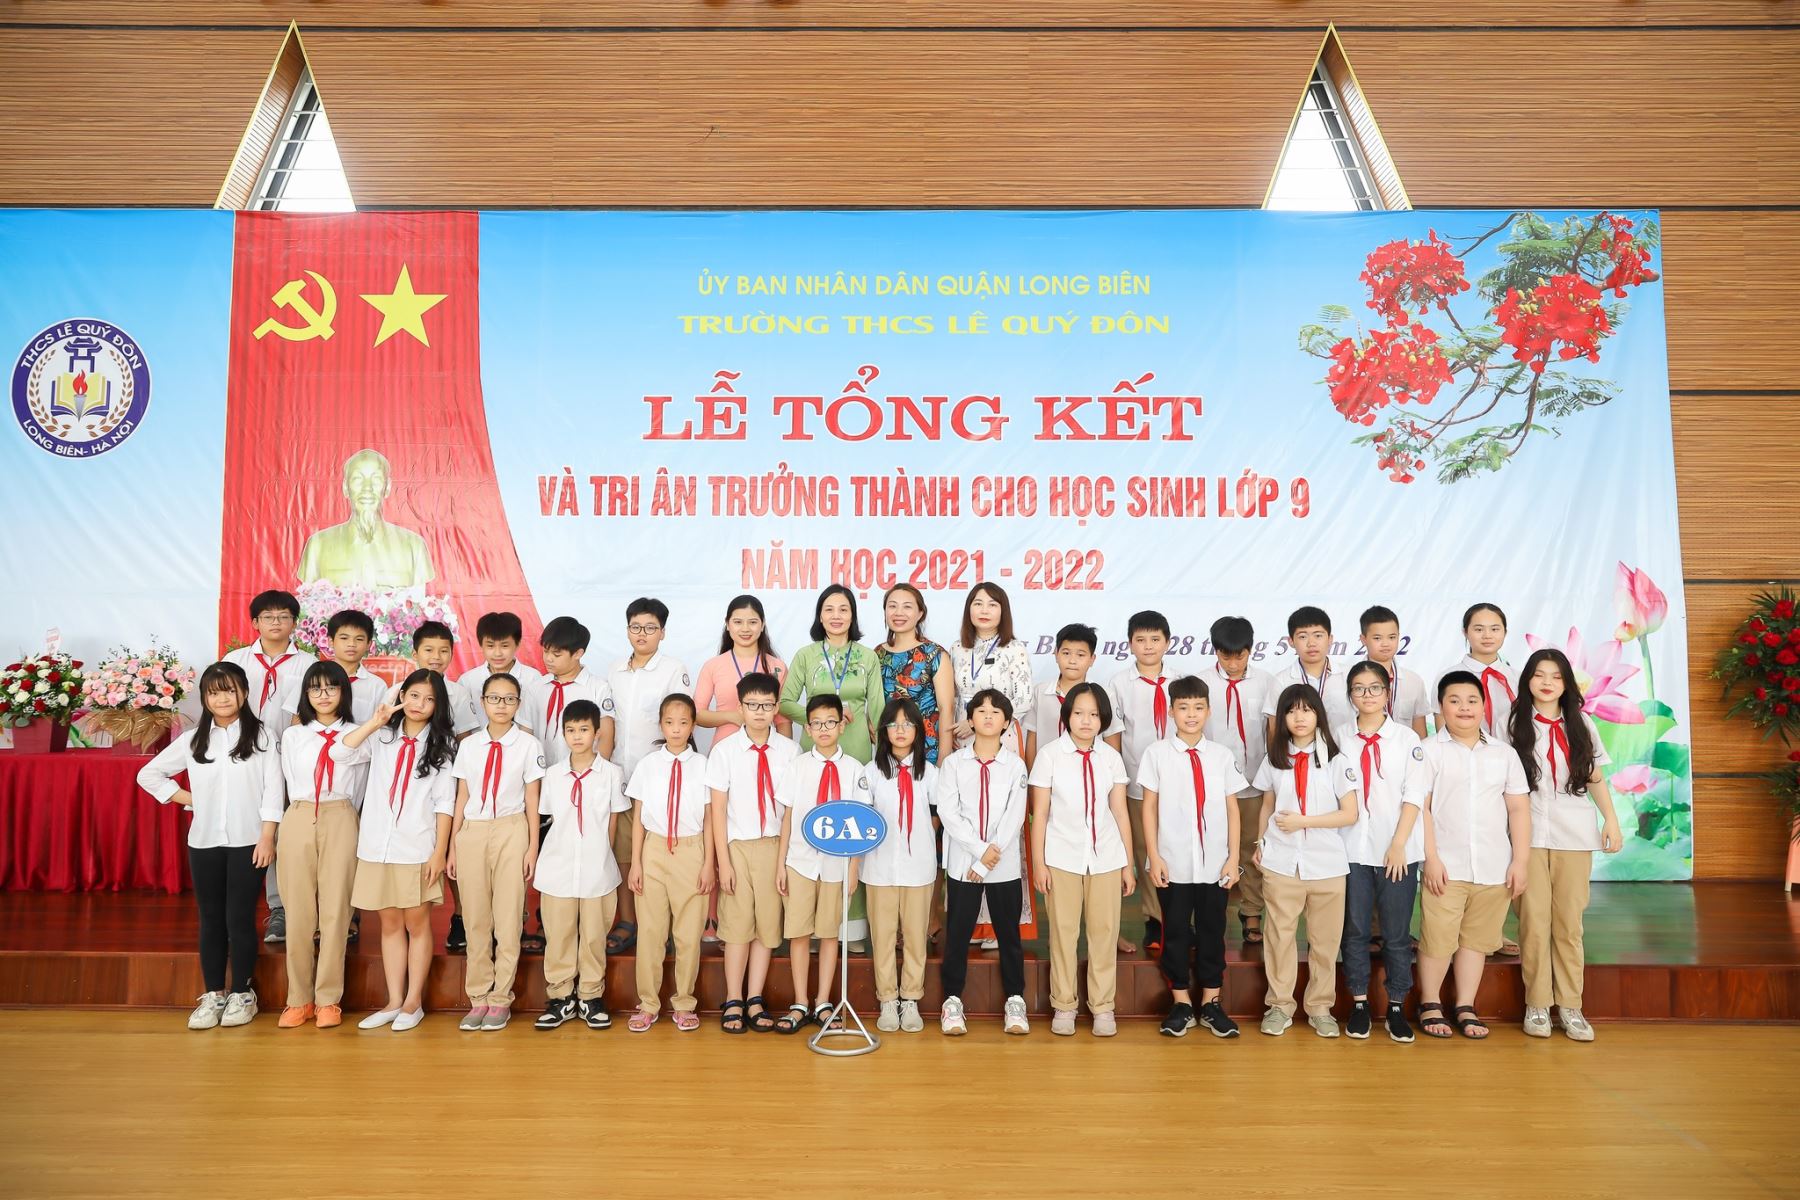 Lễ tổng kết năm học 2021-2022 và Tri ân, trưởng thành cho học sinh lớp 9 trường THCS Lê Quý Đôn